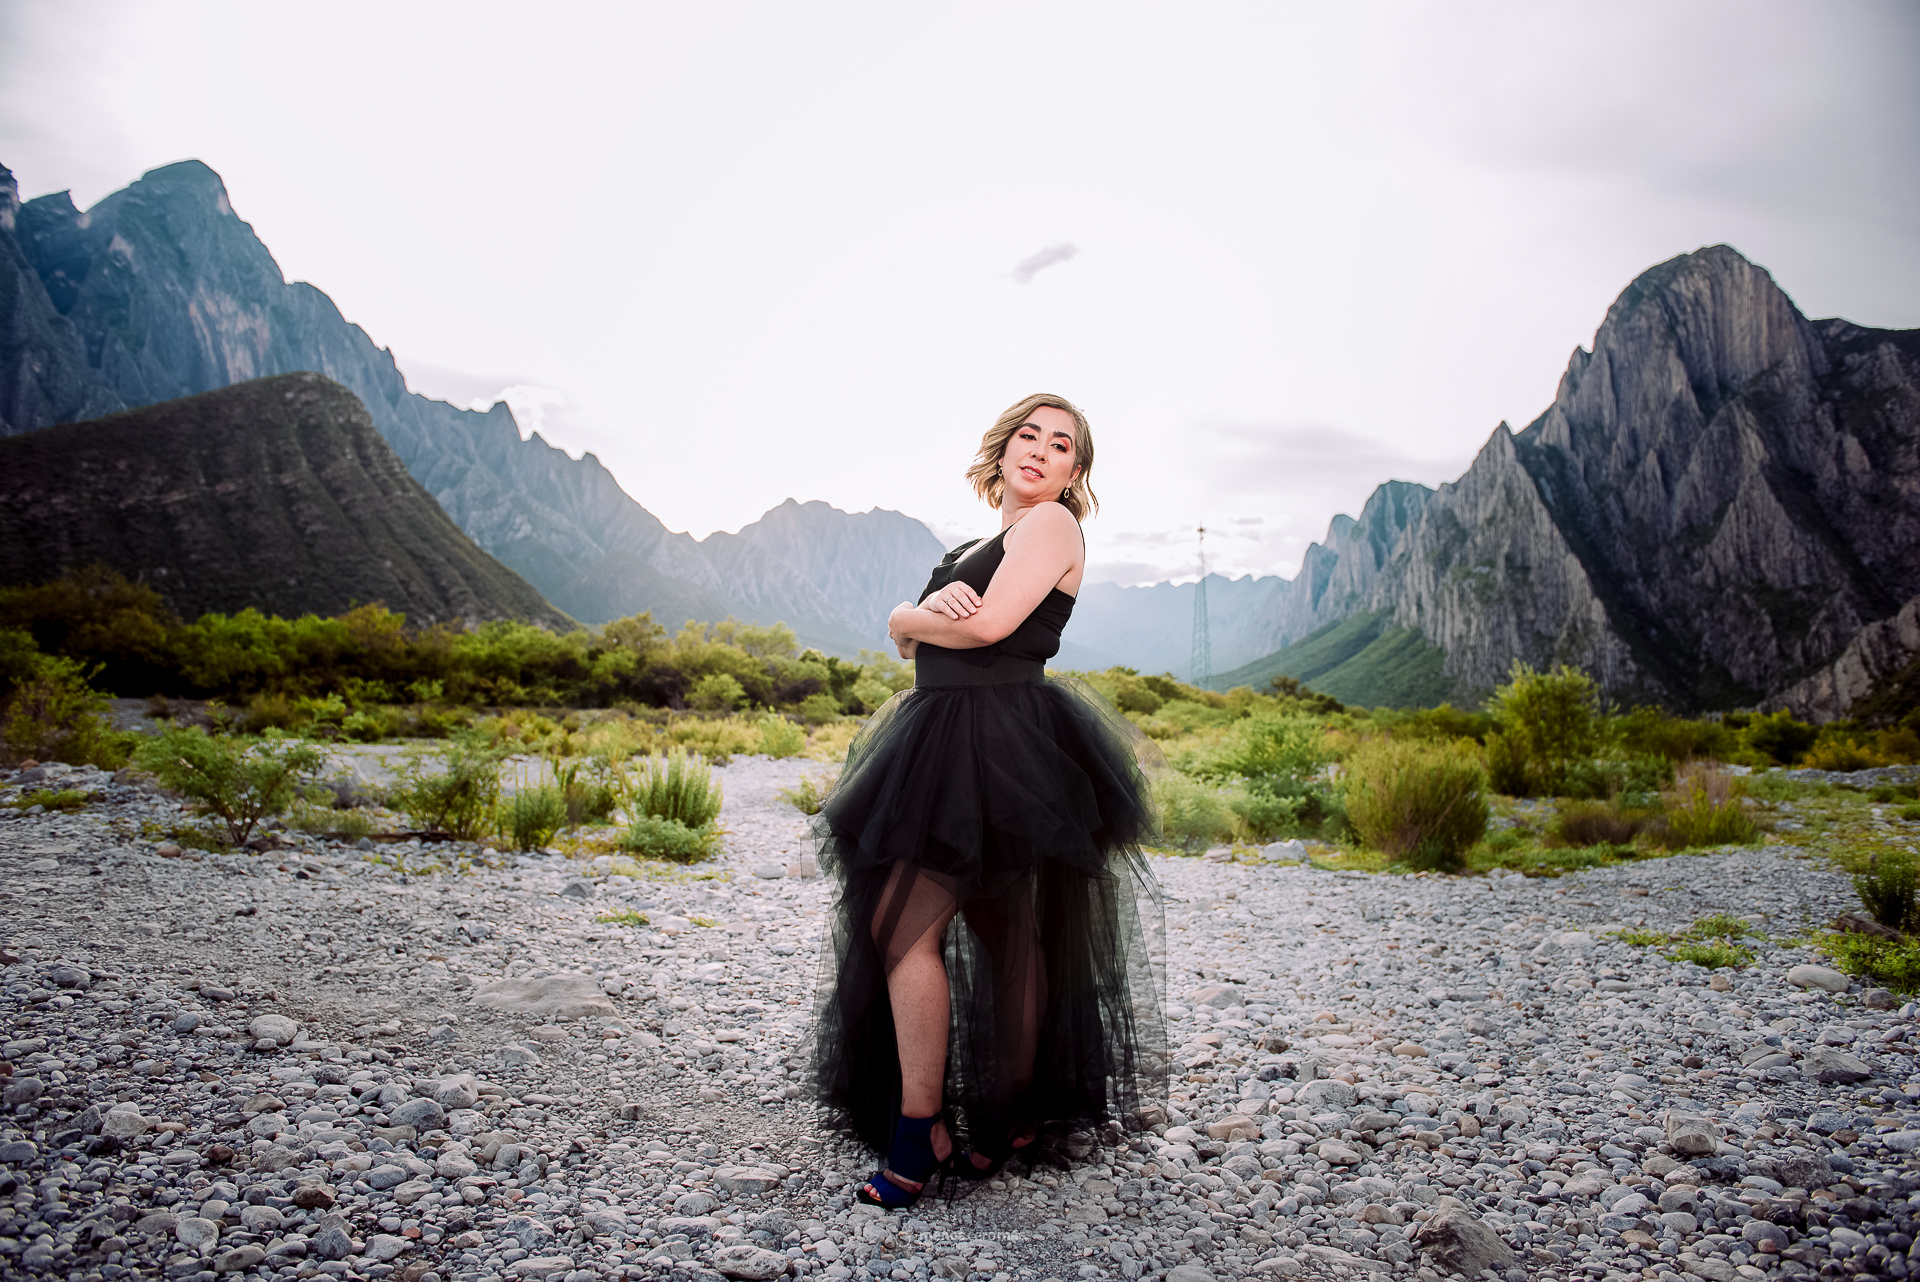 Daniela celebra su aniversario con una sesión fotográfica en el Parque La Huasteca. La imagen la muestra con un elegante vestido negro, con las imponentes montañas de la Huasteca como telón de fondo.